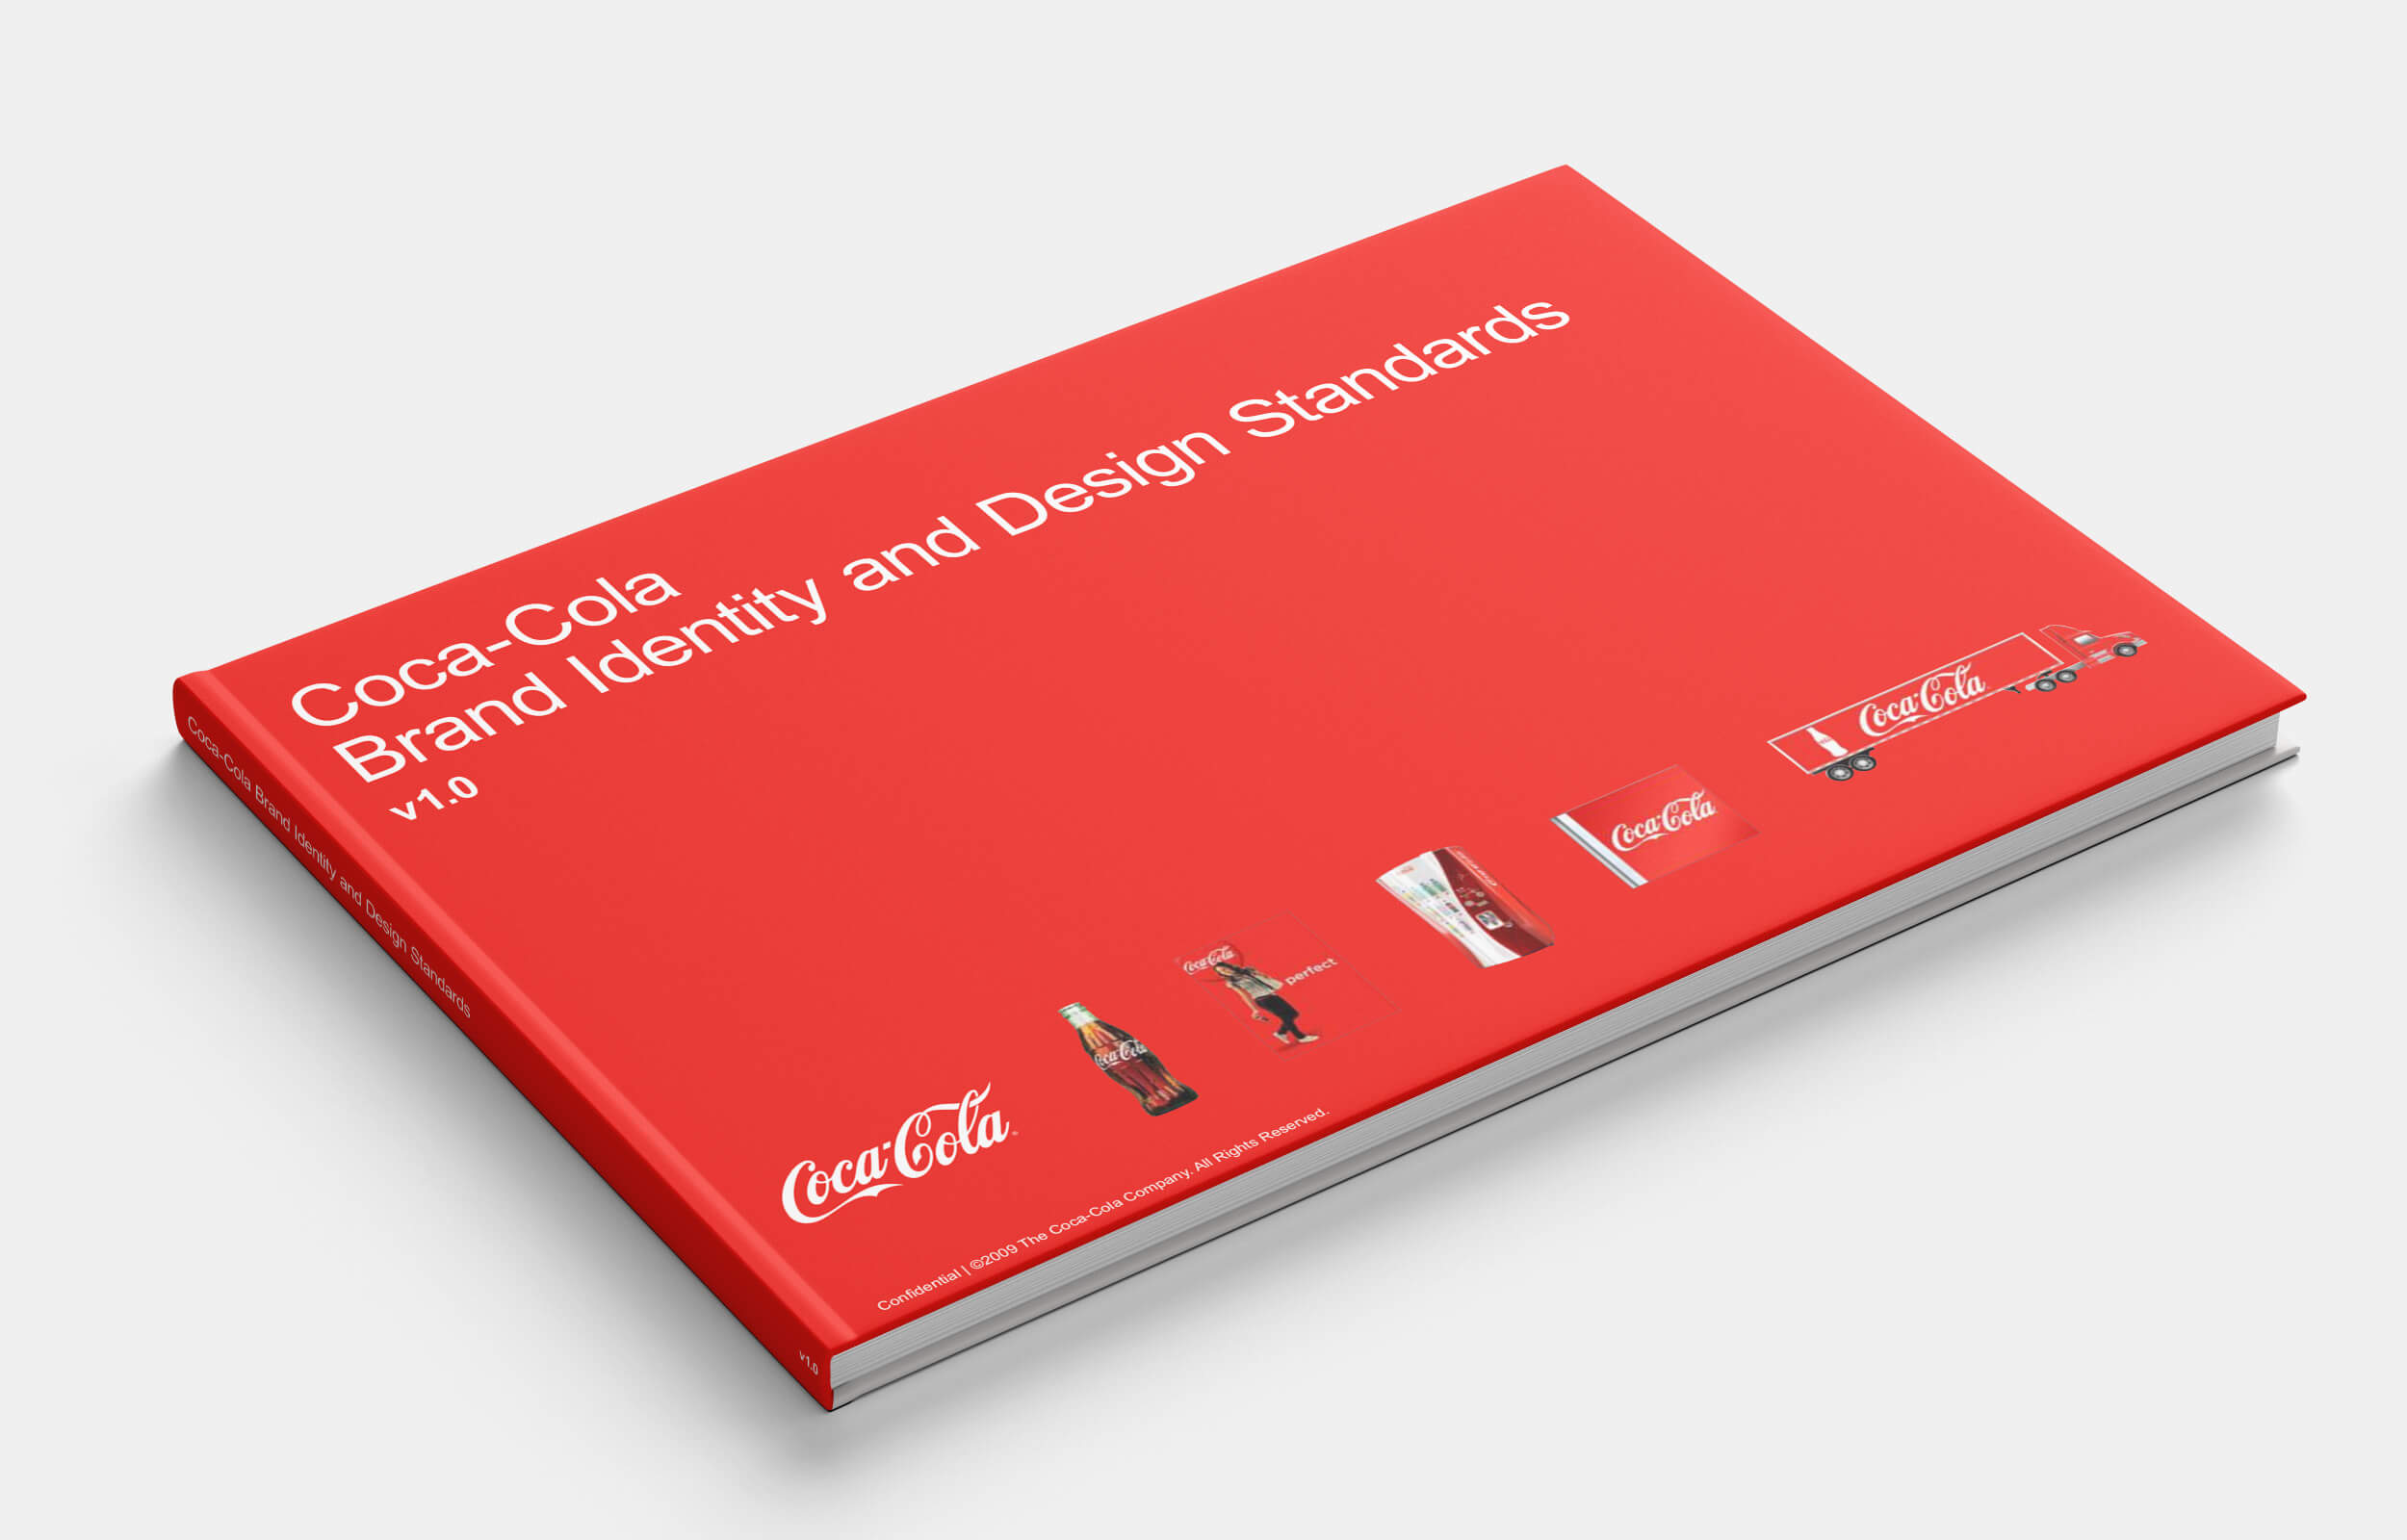 Coca cola brand book 2006-2013 - picture